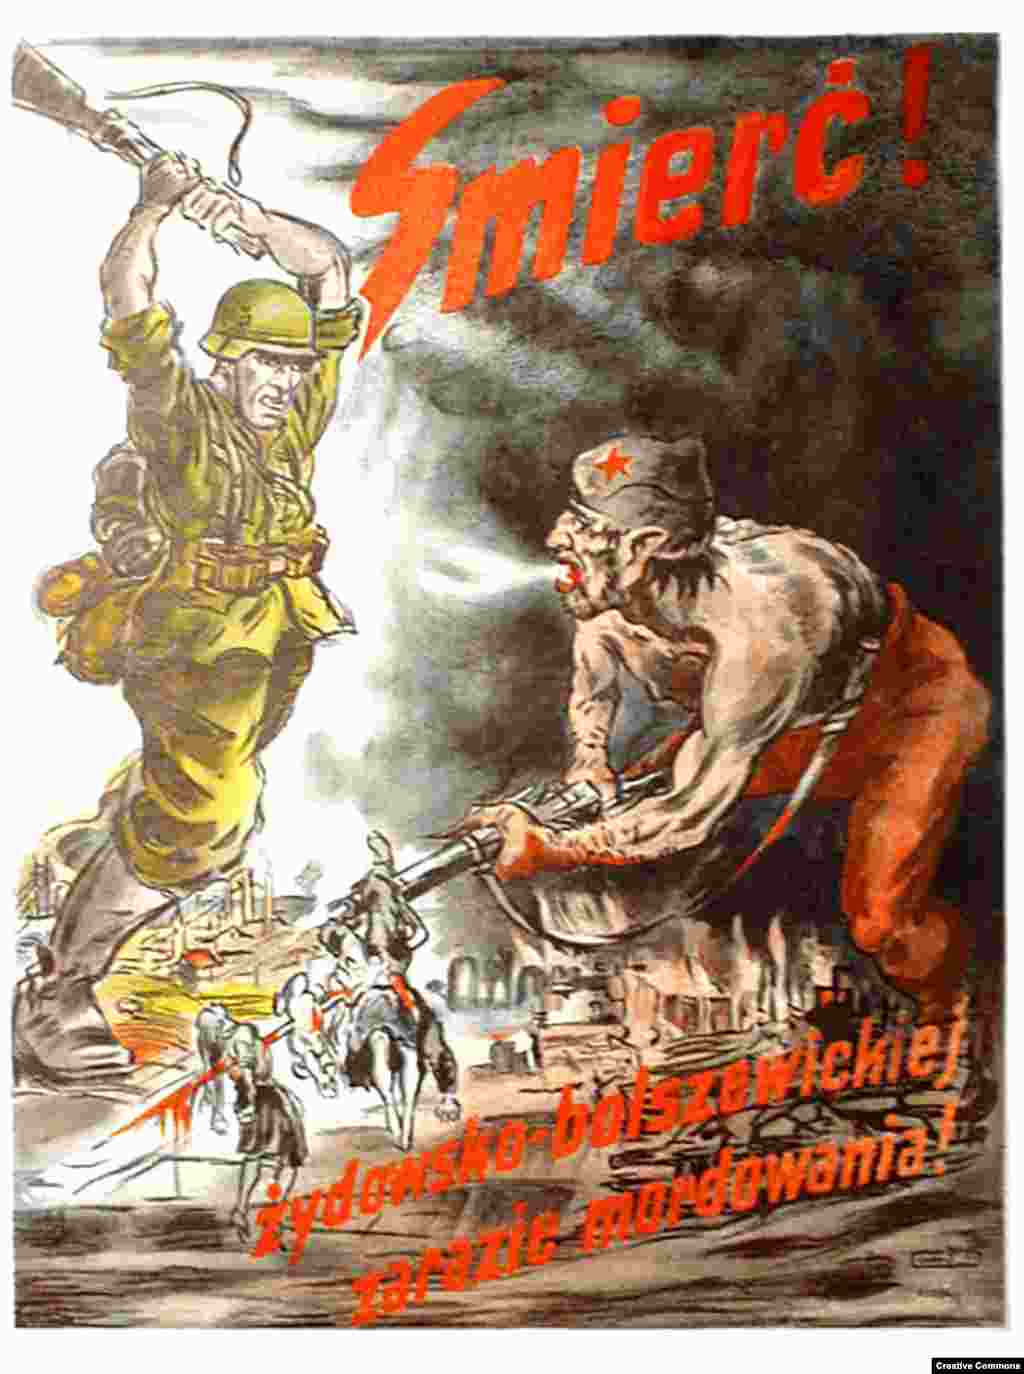 Нацистський пропагандистський плакат закликає: &laquo;Смерть єврейсько-більшовицькій заразі вбивства!&raquo; Українці гинули не тільки при стратах від рук радянських спецслужб &ndash; мільйони українців загинули й унаслідок сталінського Голодомору. Нацистська пропаганда, що ототожнювала євреїв із радянським режимом, вчинила свій вплив на частину українського націоналістичного руху в регіоні, де й раніше ставалися випадки антисемітського насильства.